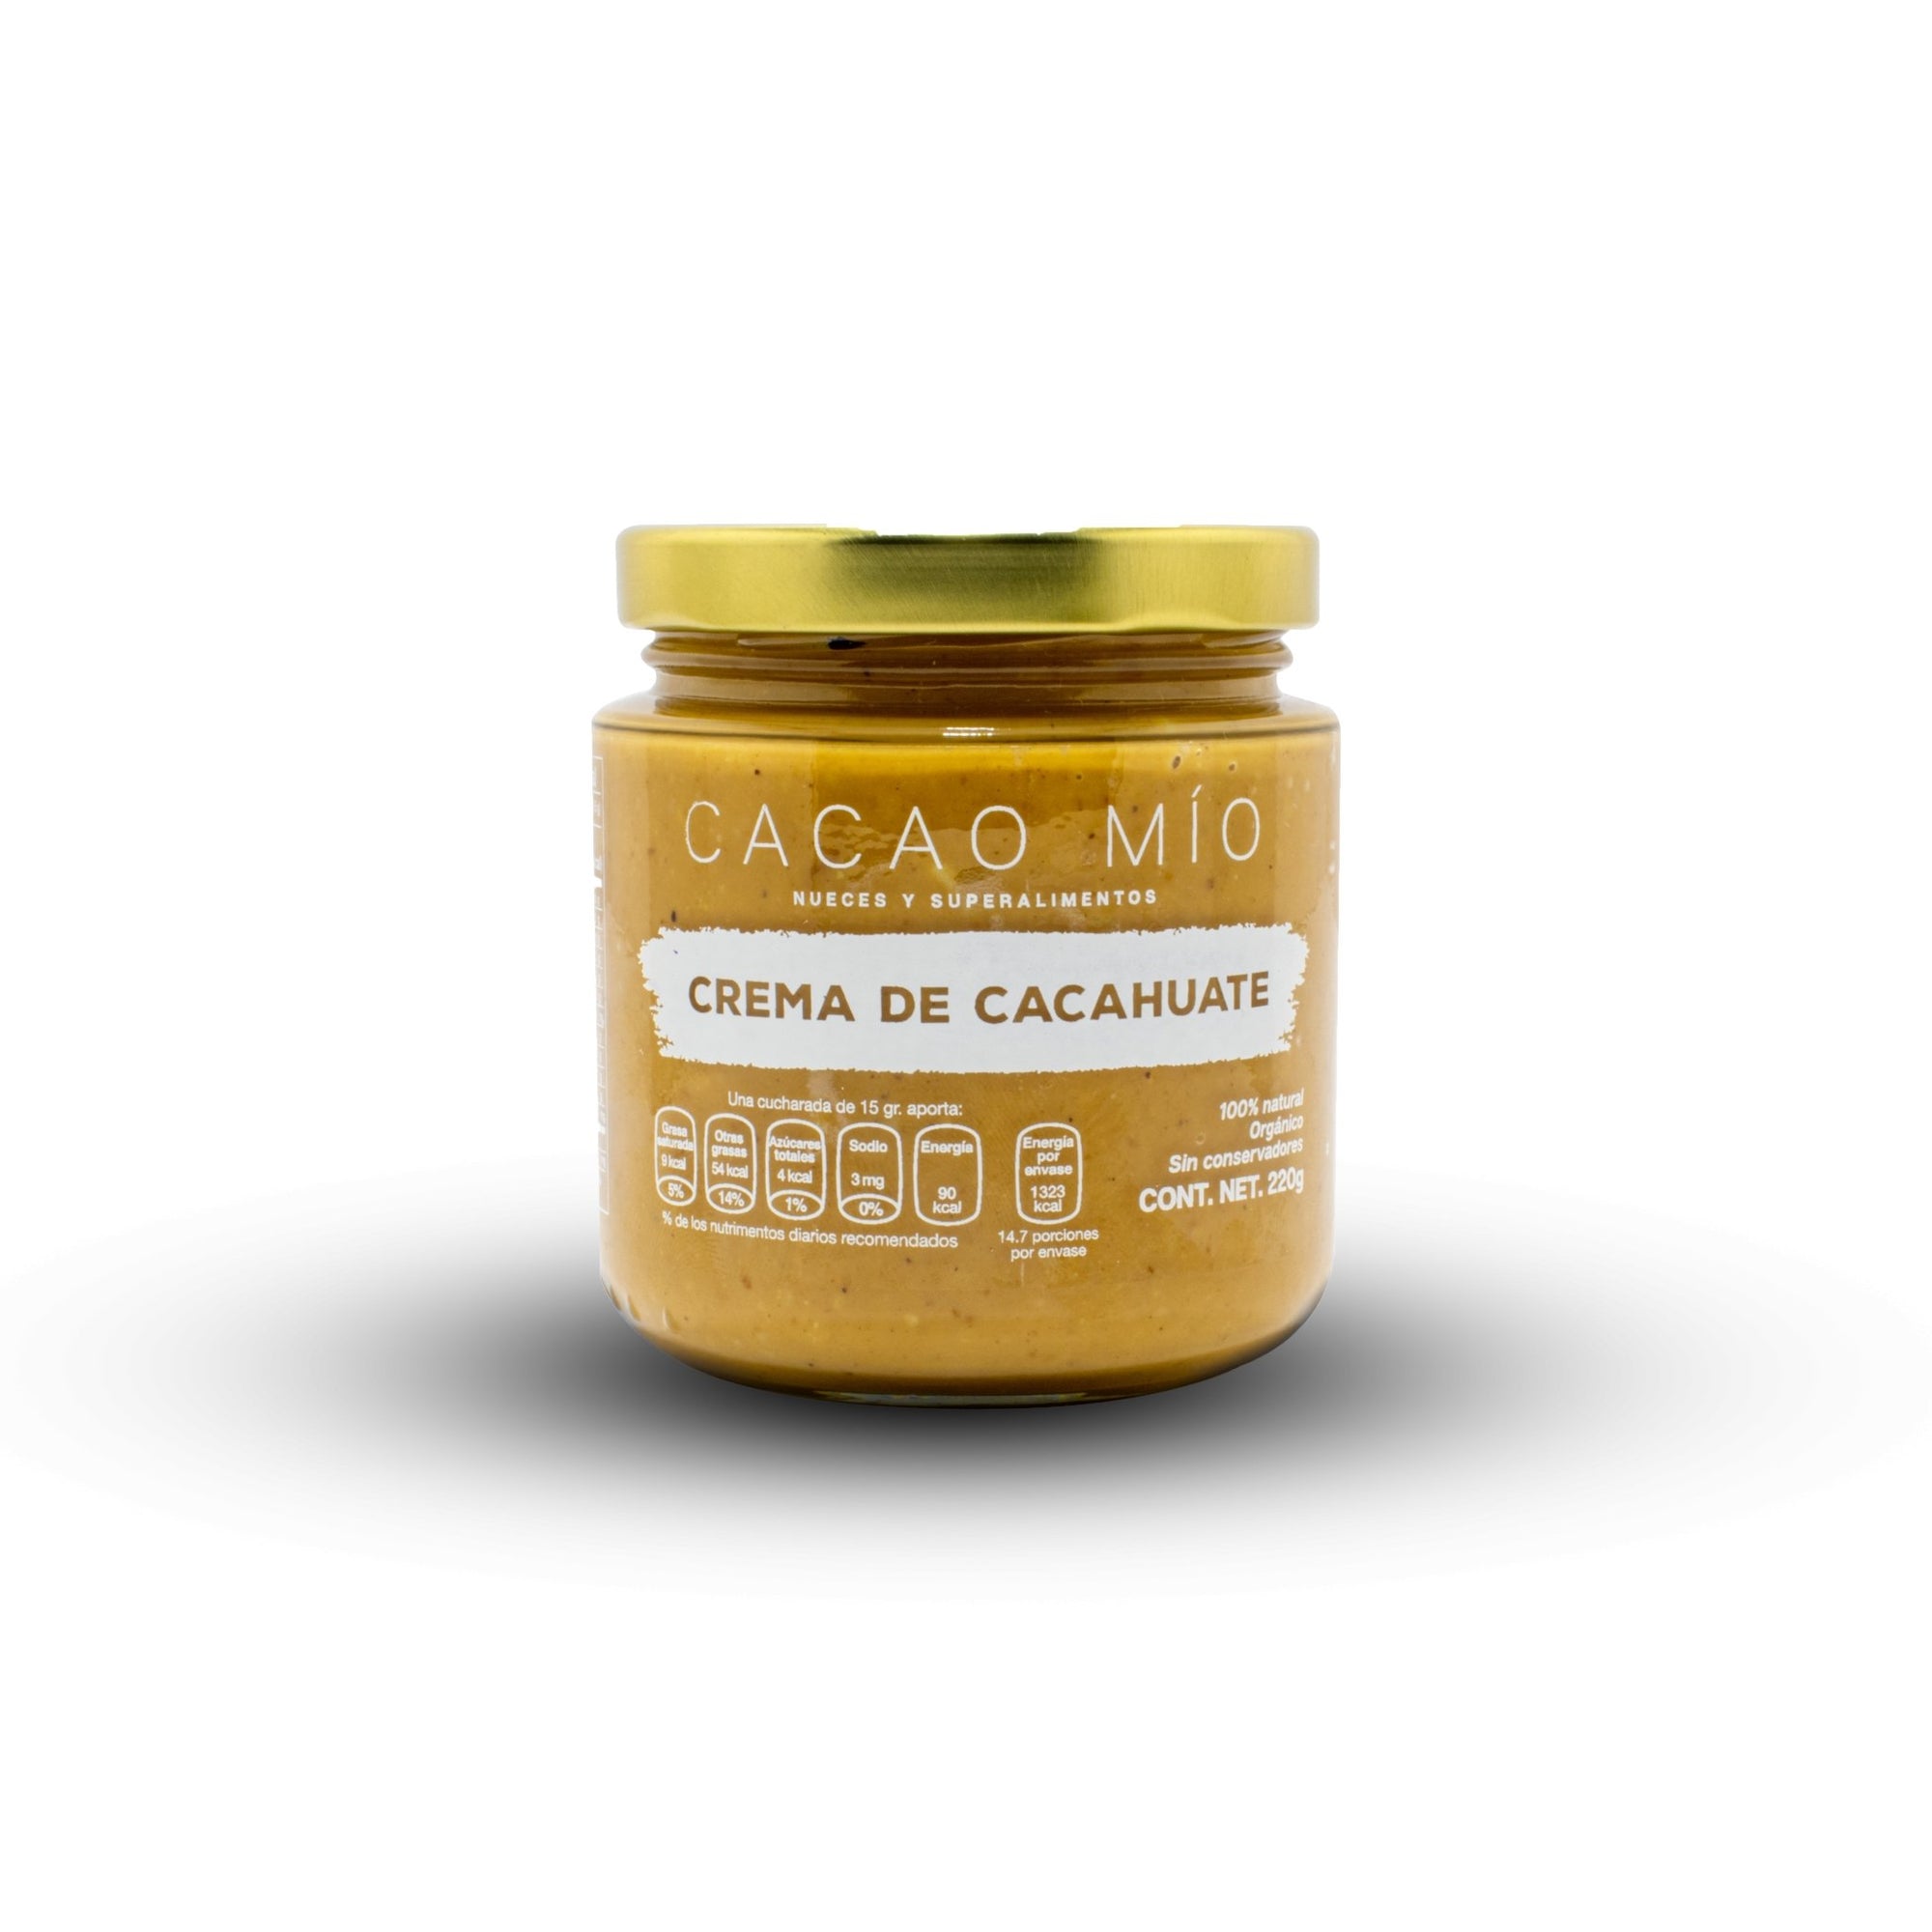 Crema de Cacahuate Crunchy - cacaomio.com